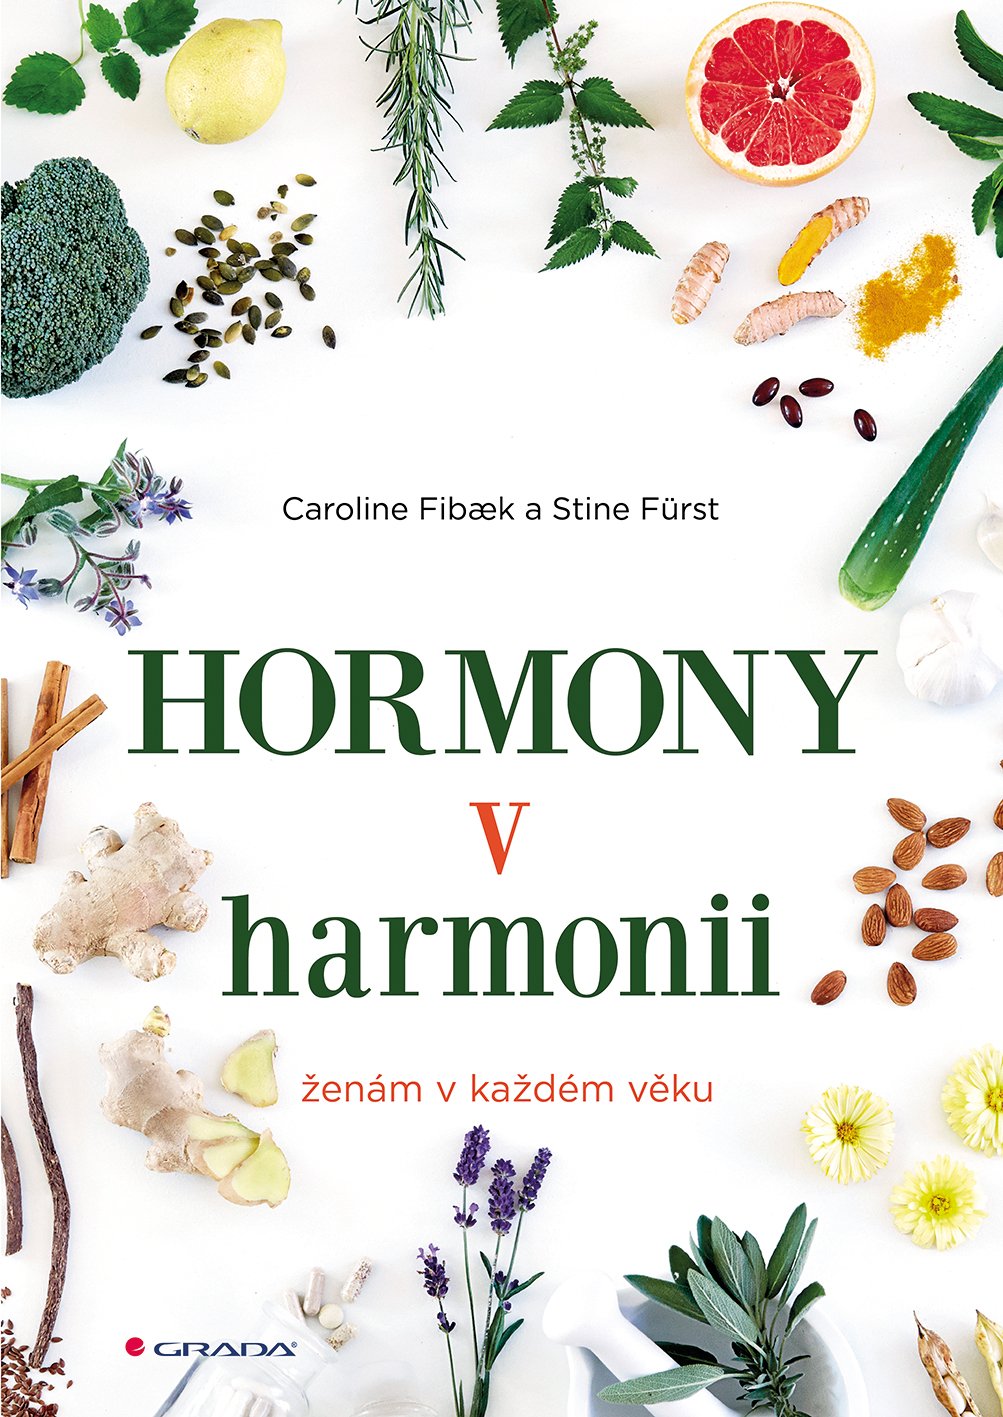 Hormony v harmonii ženám v každém věku - Caroline Fibaek